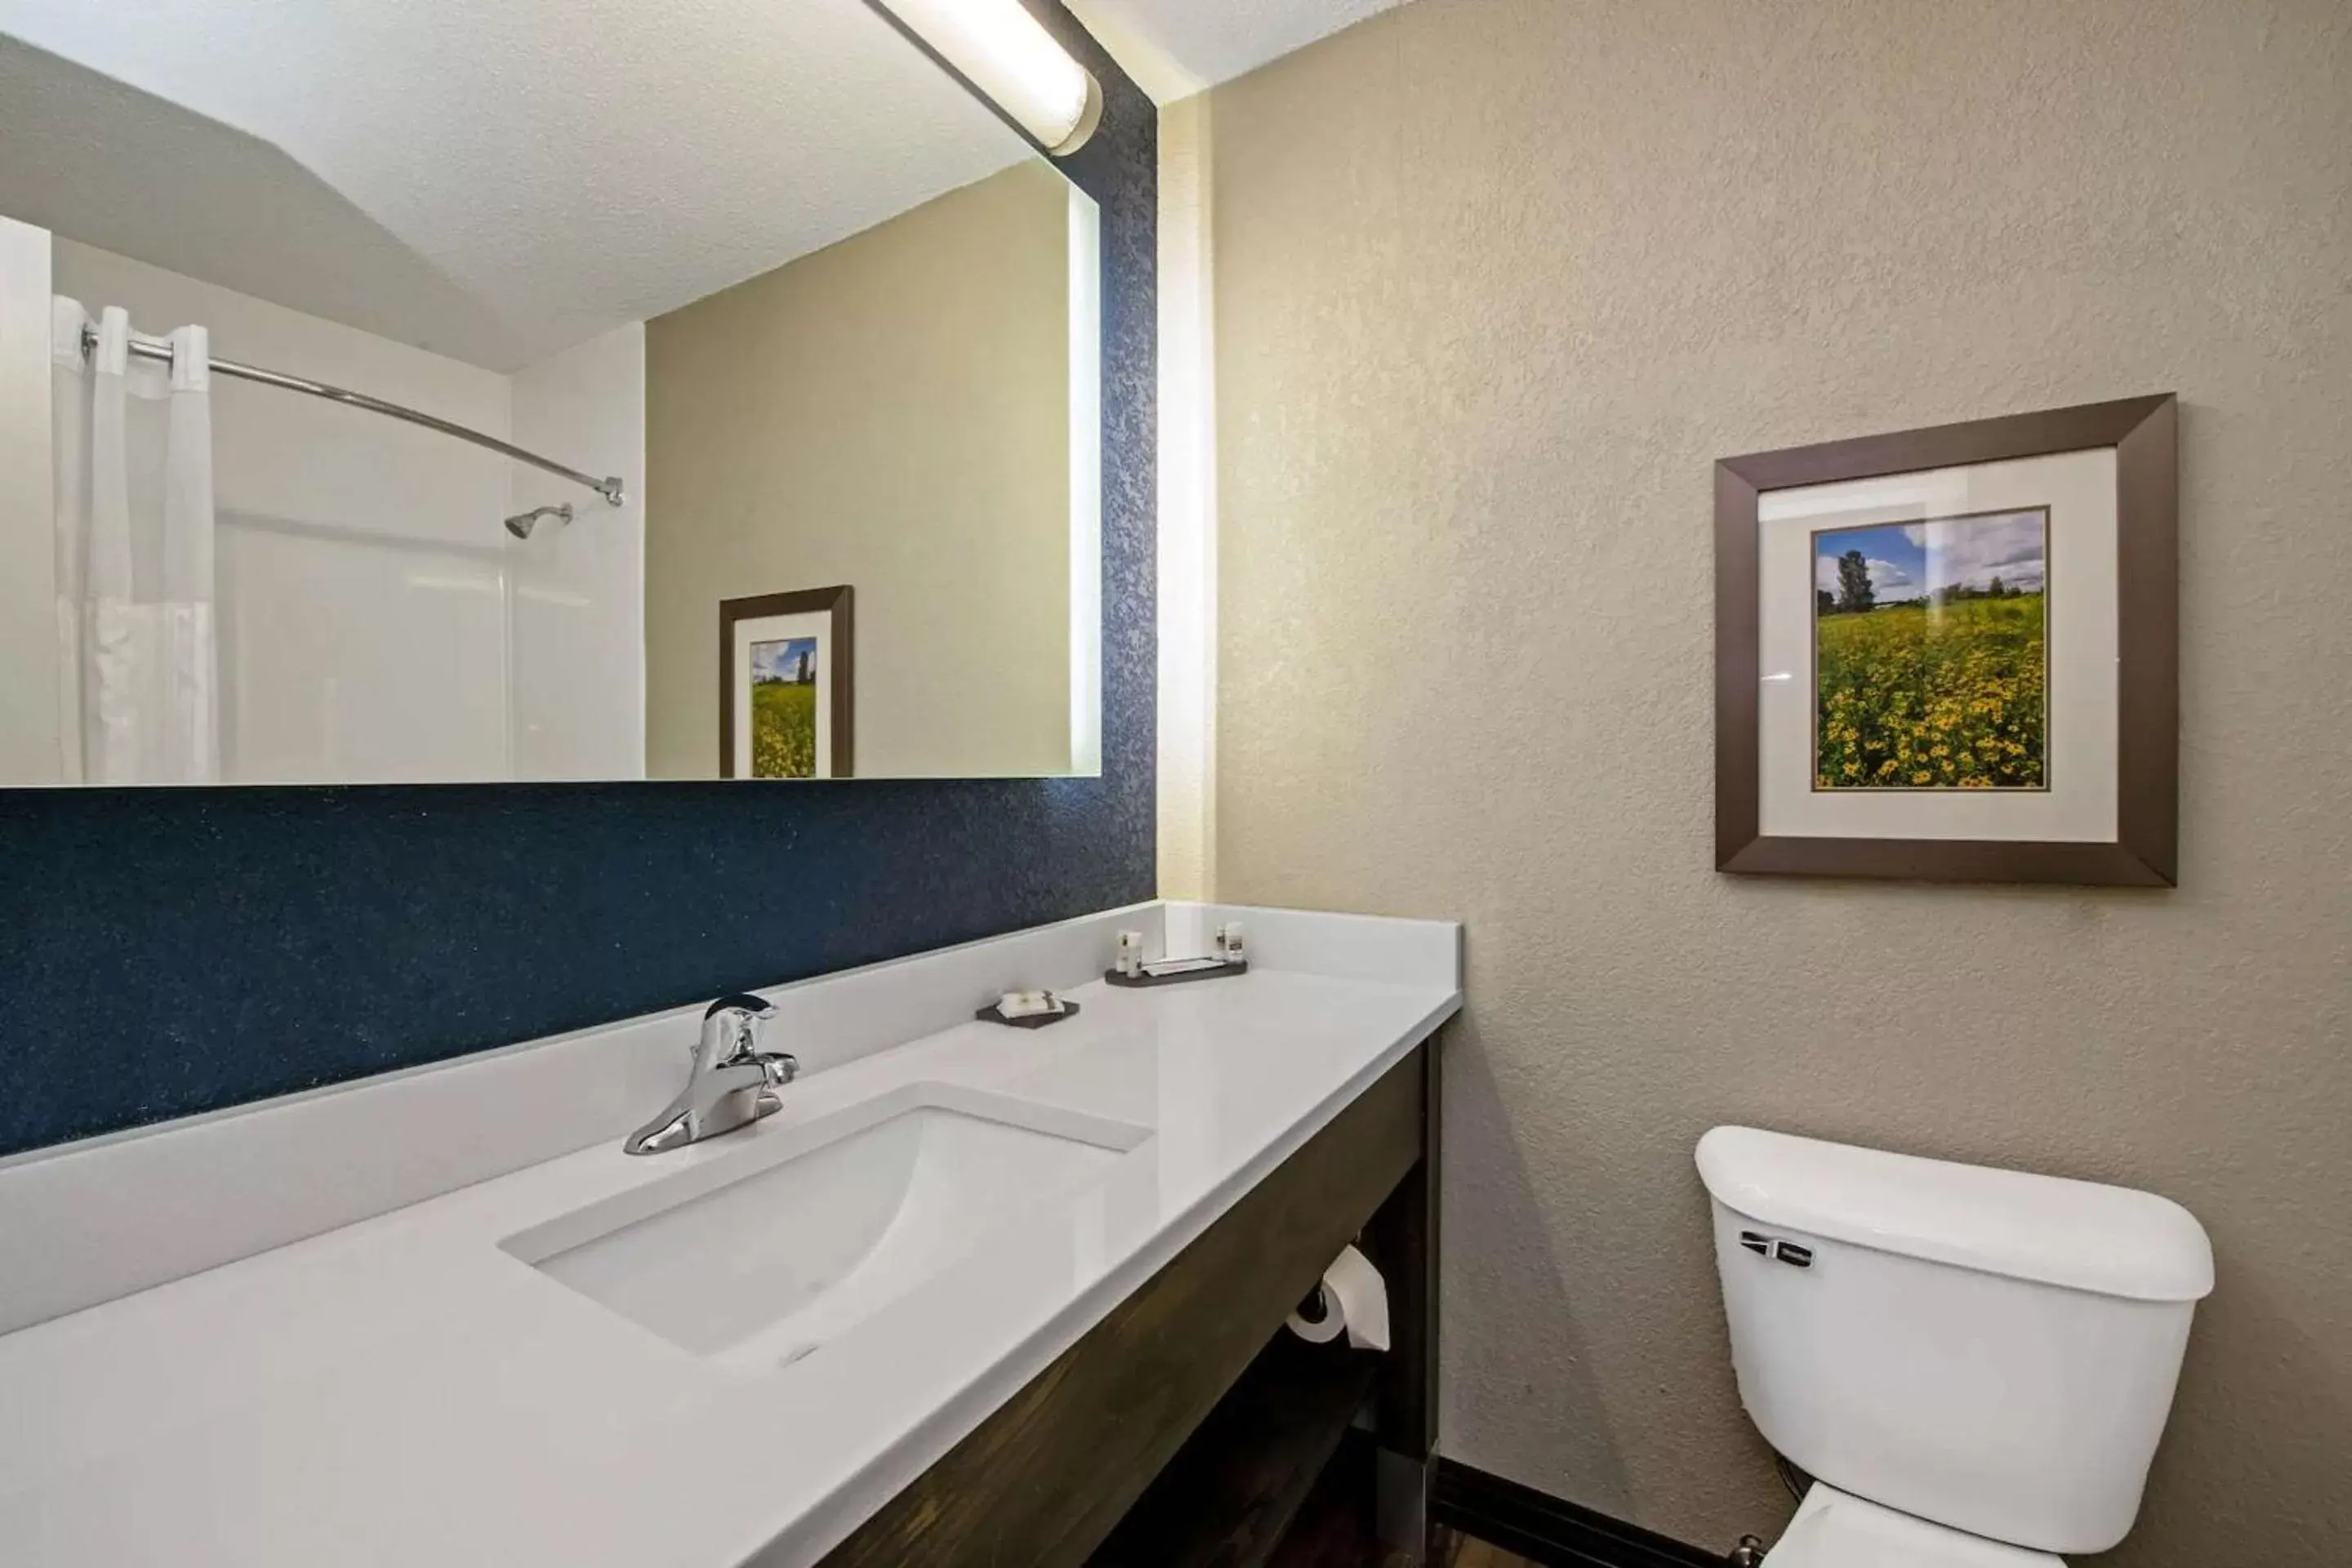 Bedroom, Bathroom in Comfort Inn & Suites Tipp City - I-75